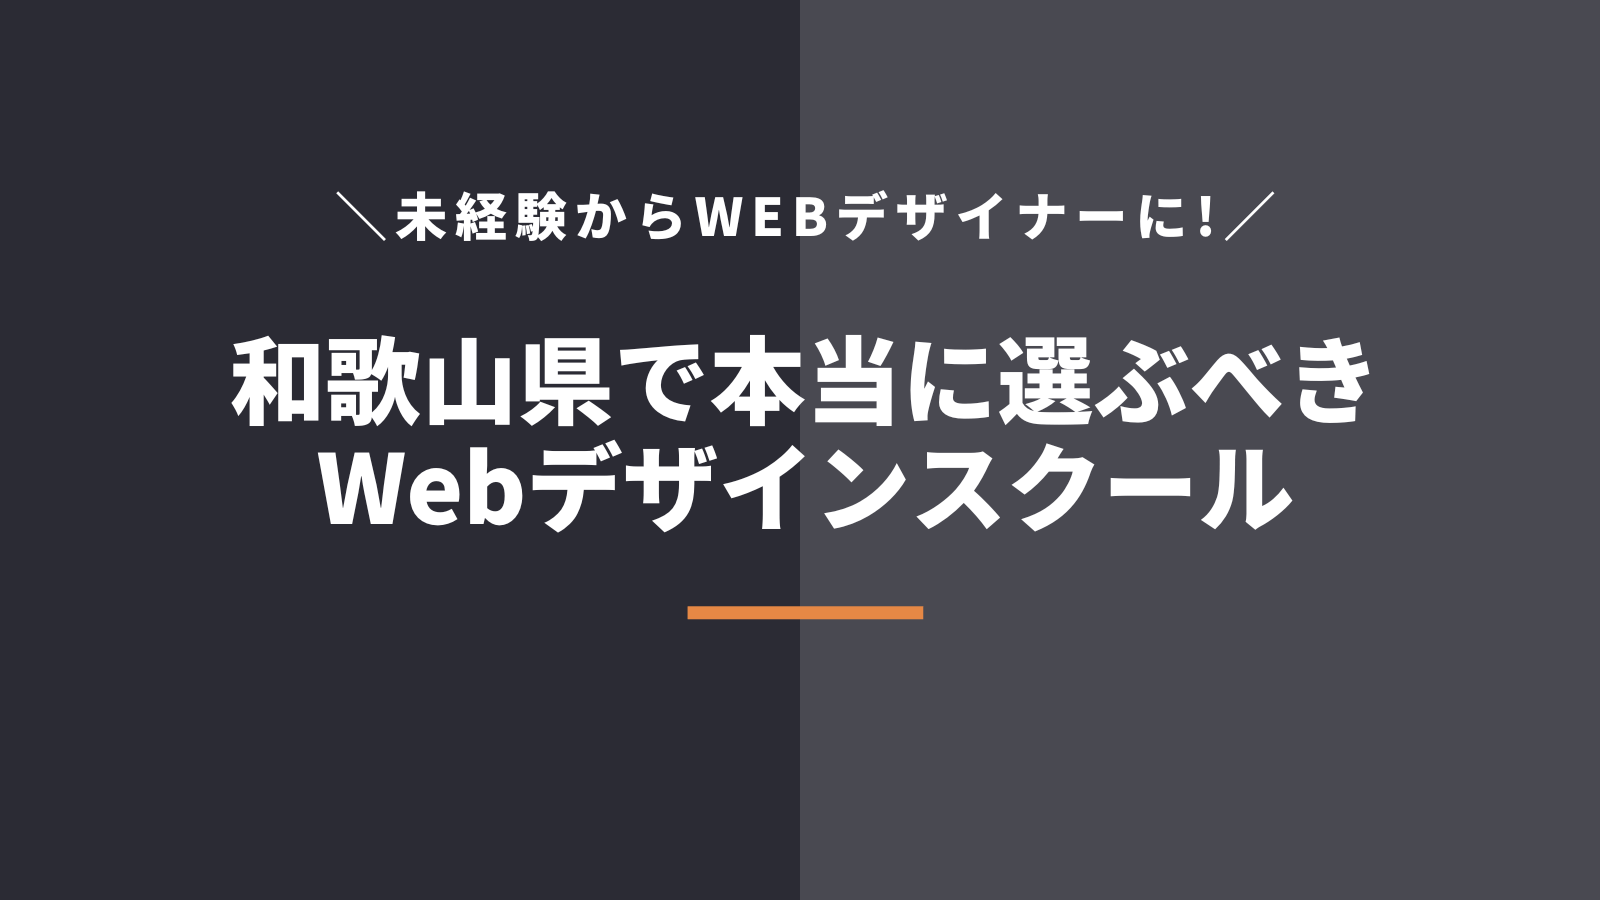 和歌山県で本当に選ぶべきWebデザインスクール・学校5選